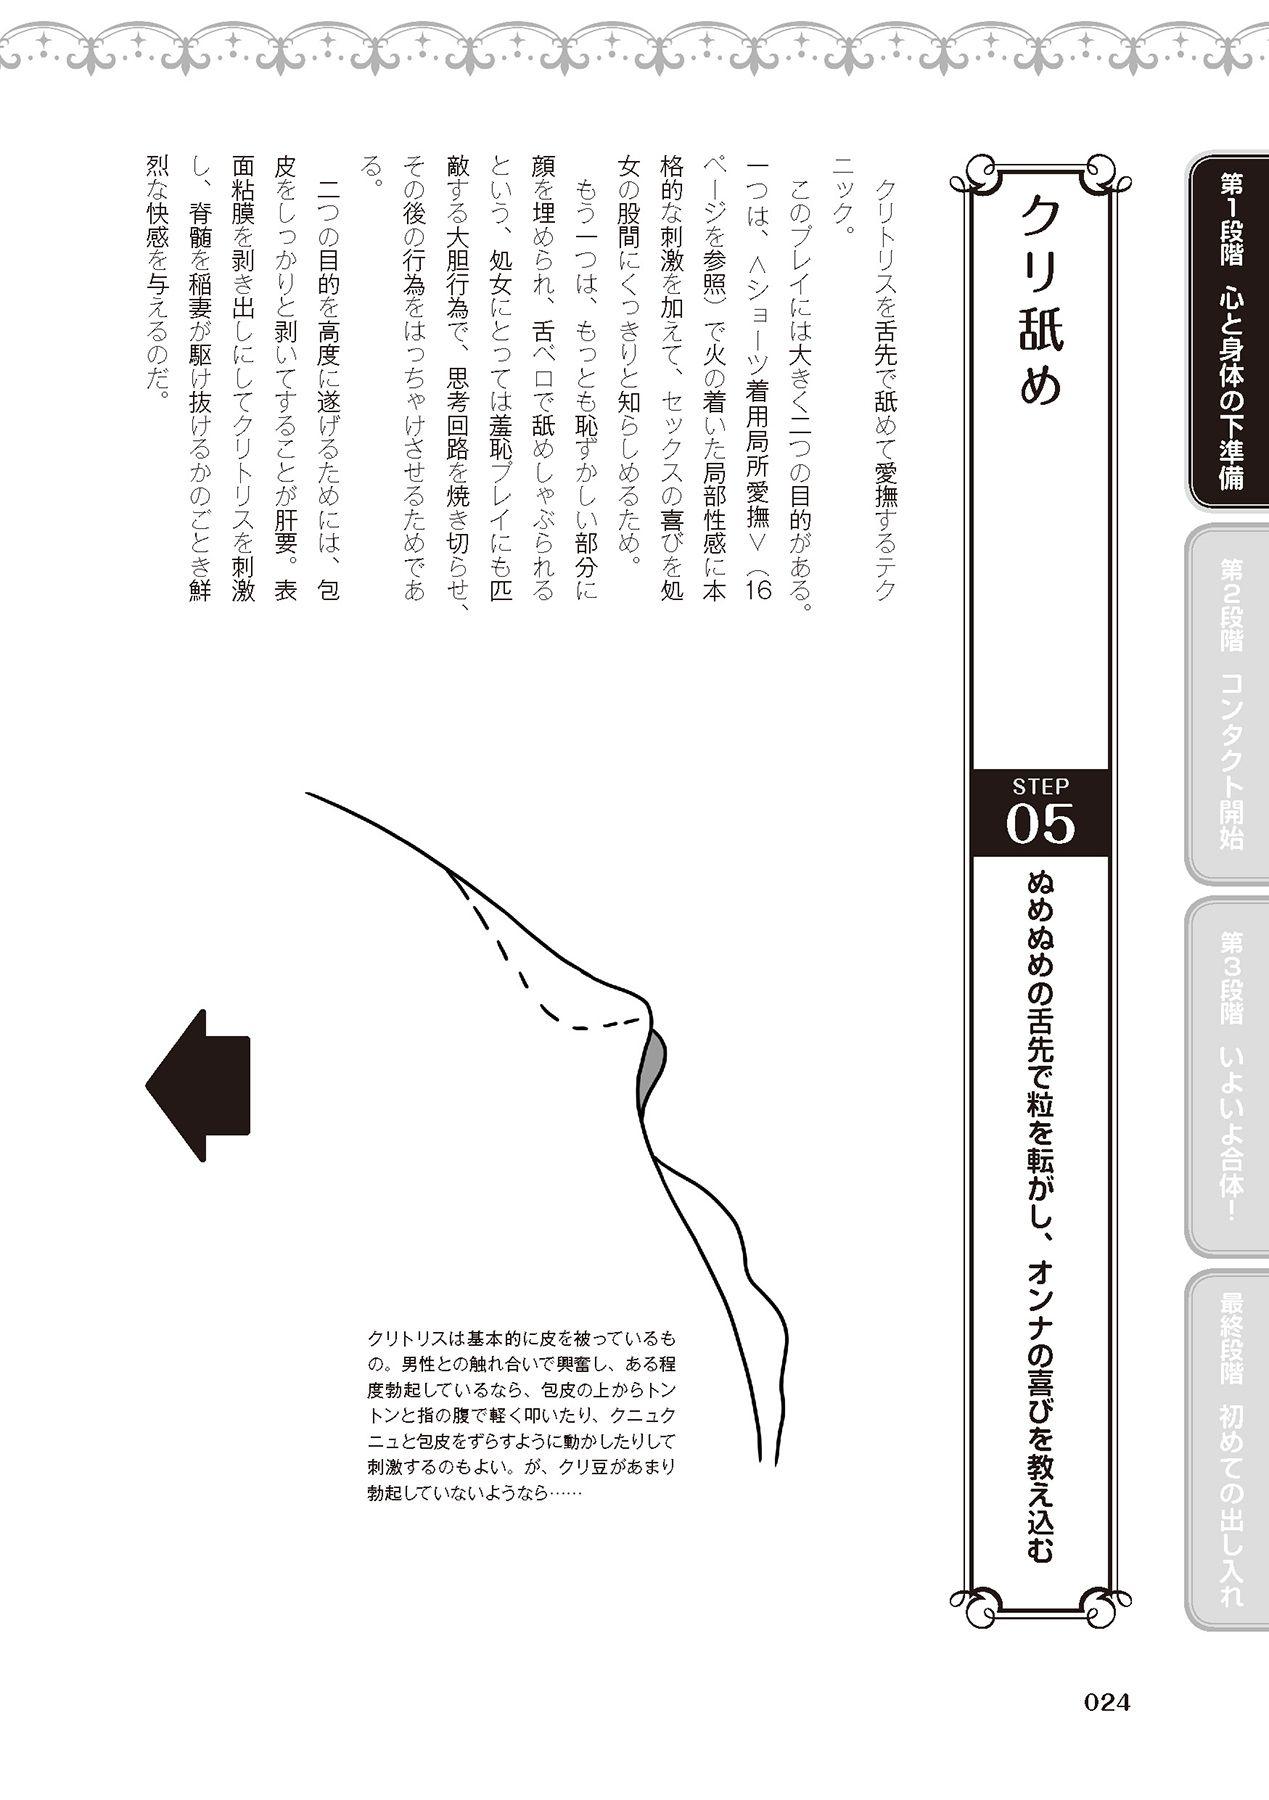 処女喪失・ロストヴァージンSEX完全マニュアル イラスト版……初エッチ 25